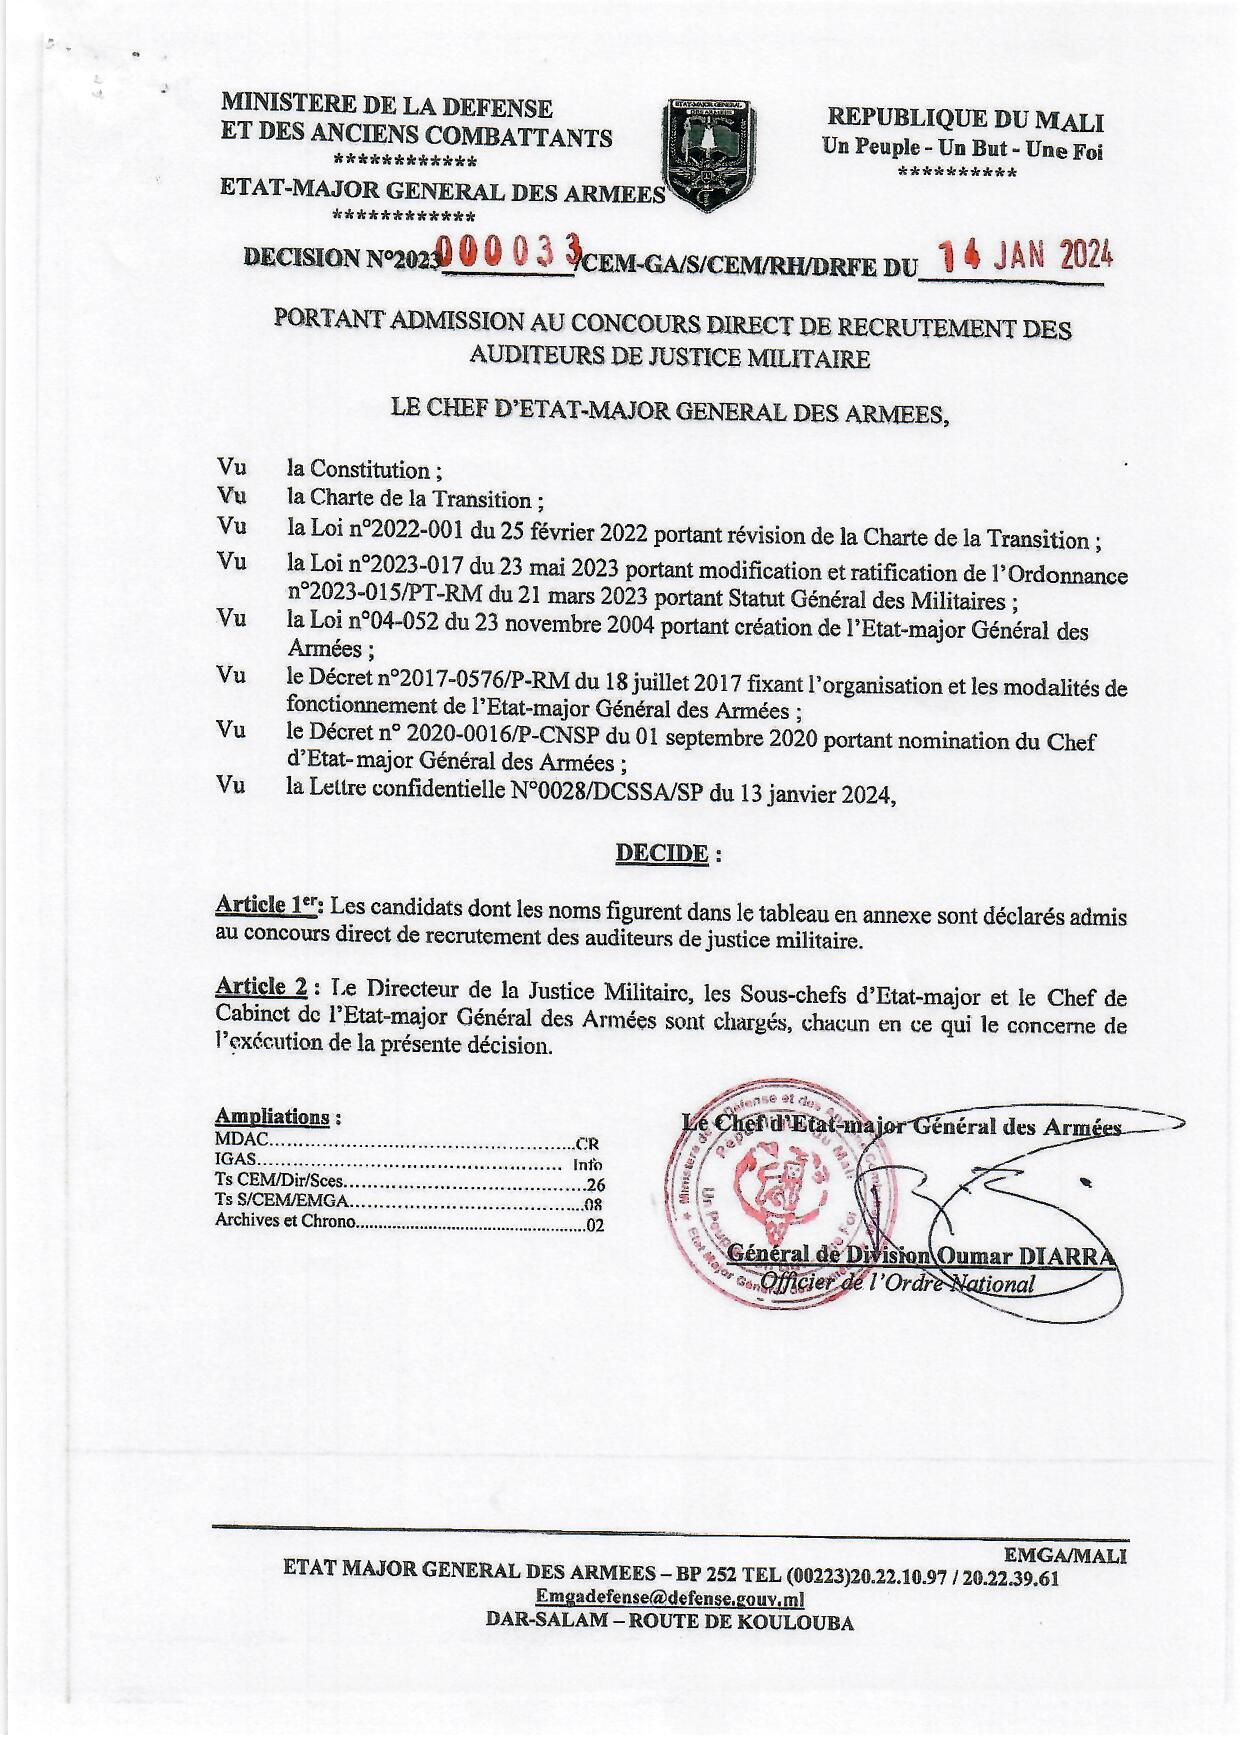  RESULTAT D'ADMISSION AU CONCOURS DE RECRUTEMENT DIRECT DES AUDITEURS DE JUSTICE MILITAIRES